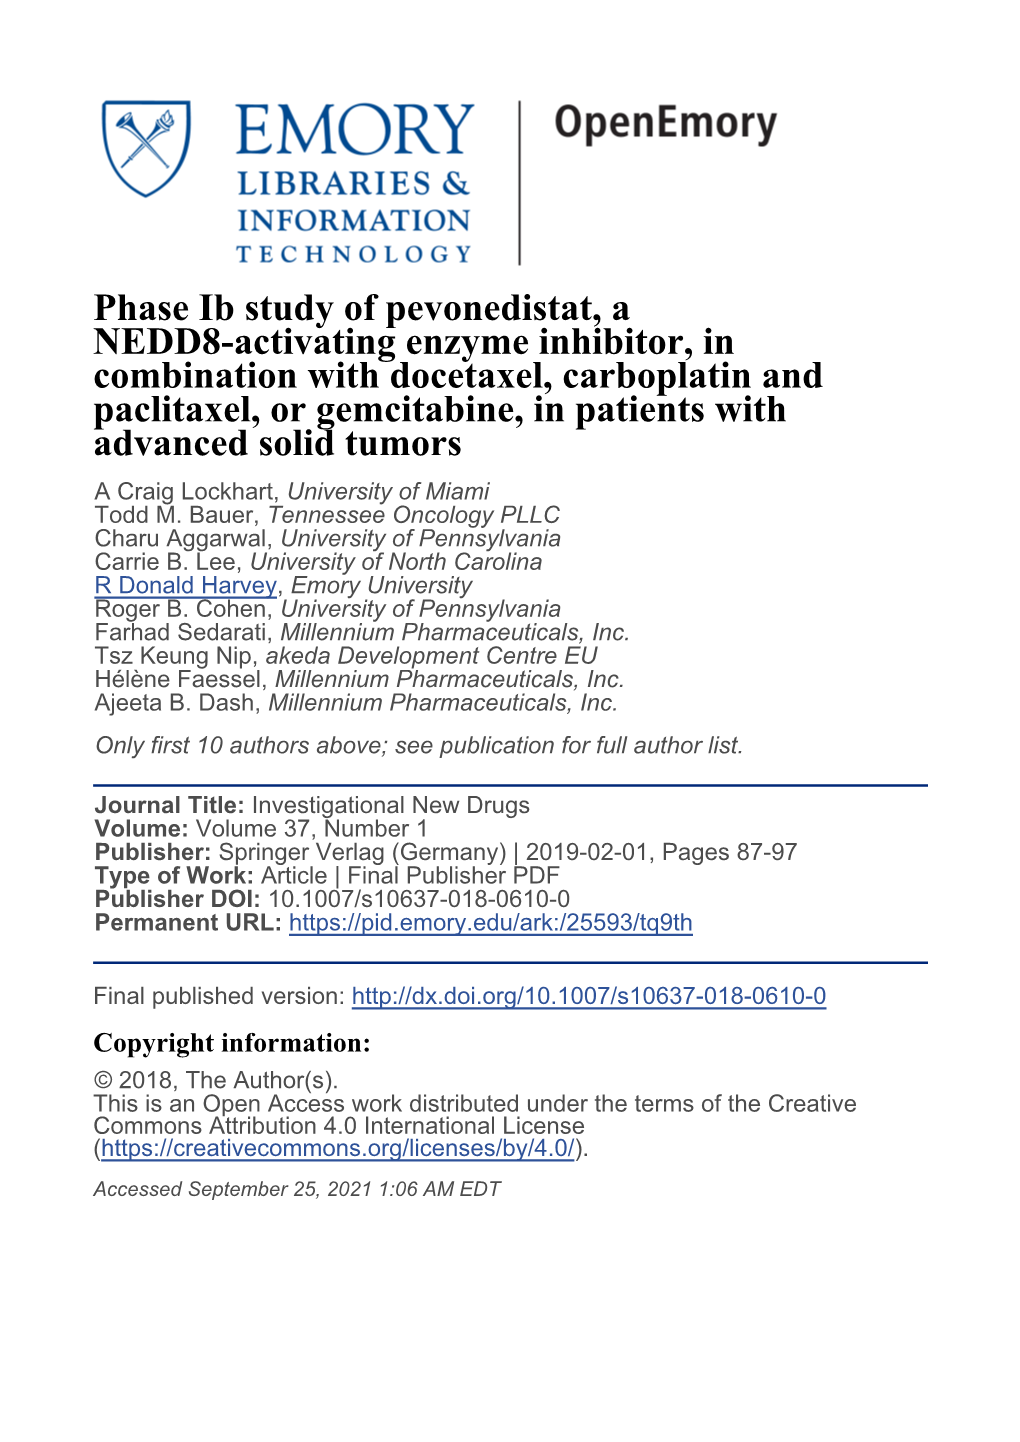 Phase Ib Study of Pevonedistat, a NEDD8